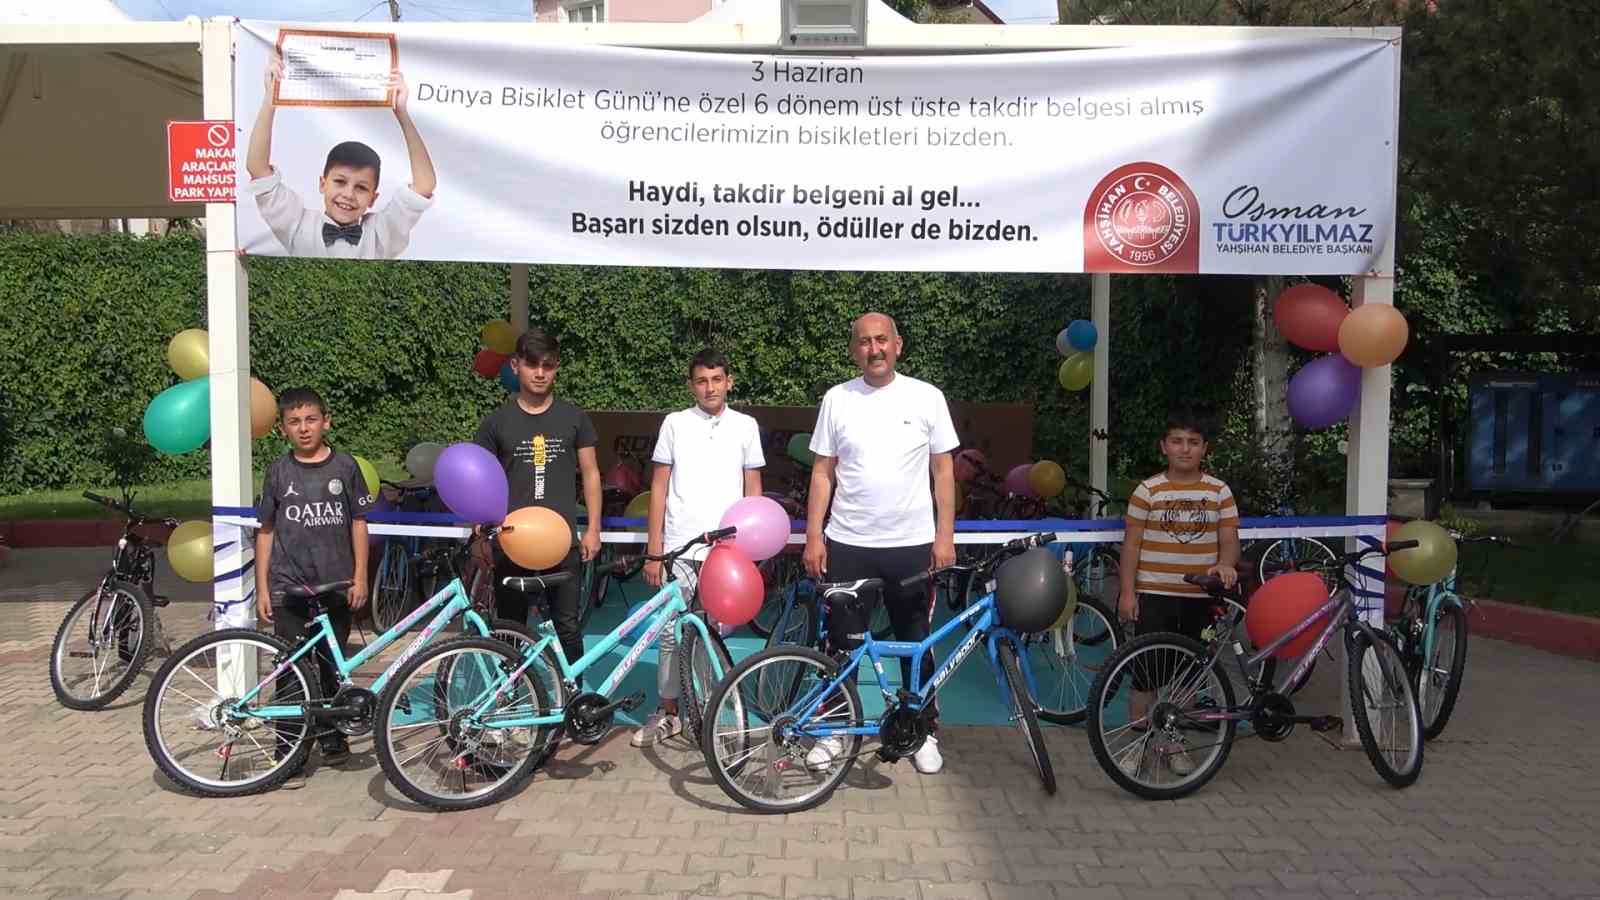 Yahşihan Belediyesi; 6 Takdir Getiren  Öğrenciye Bir Bisiklet Hediye Ediyor